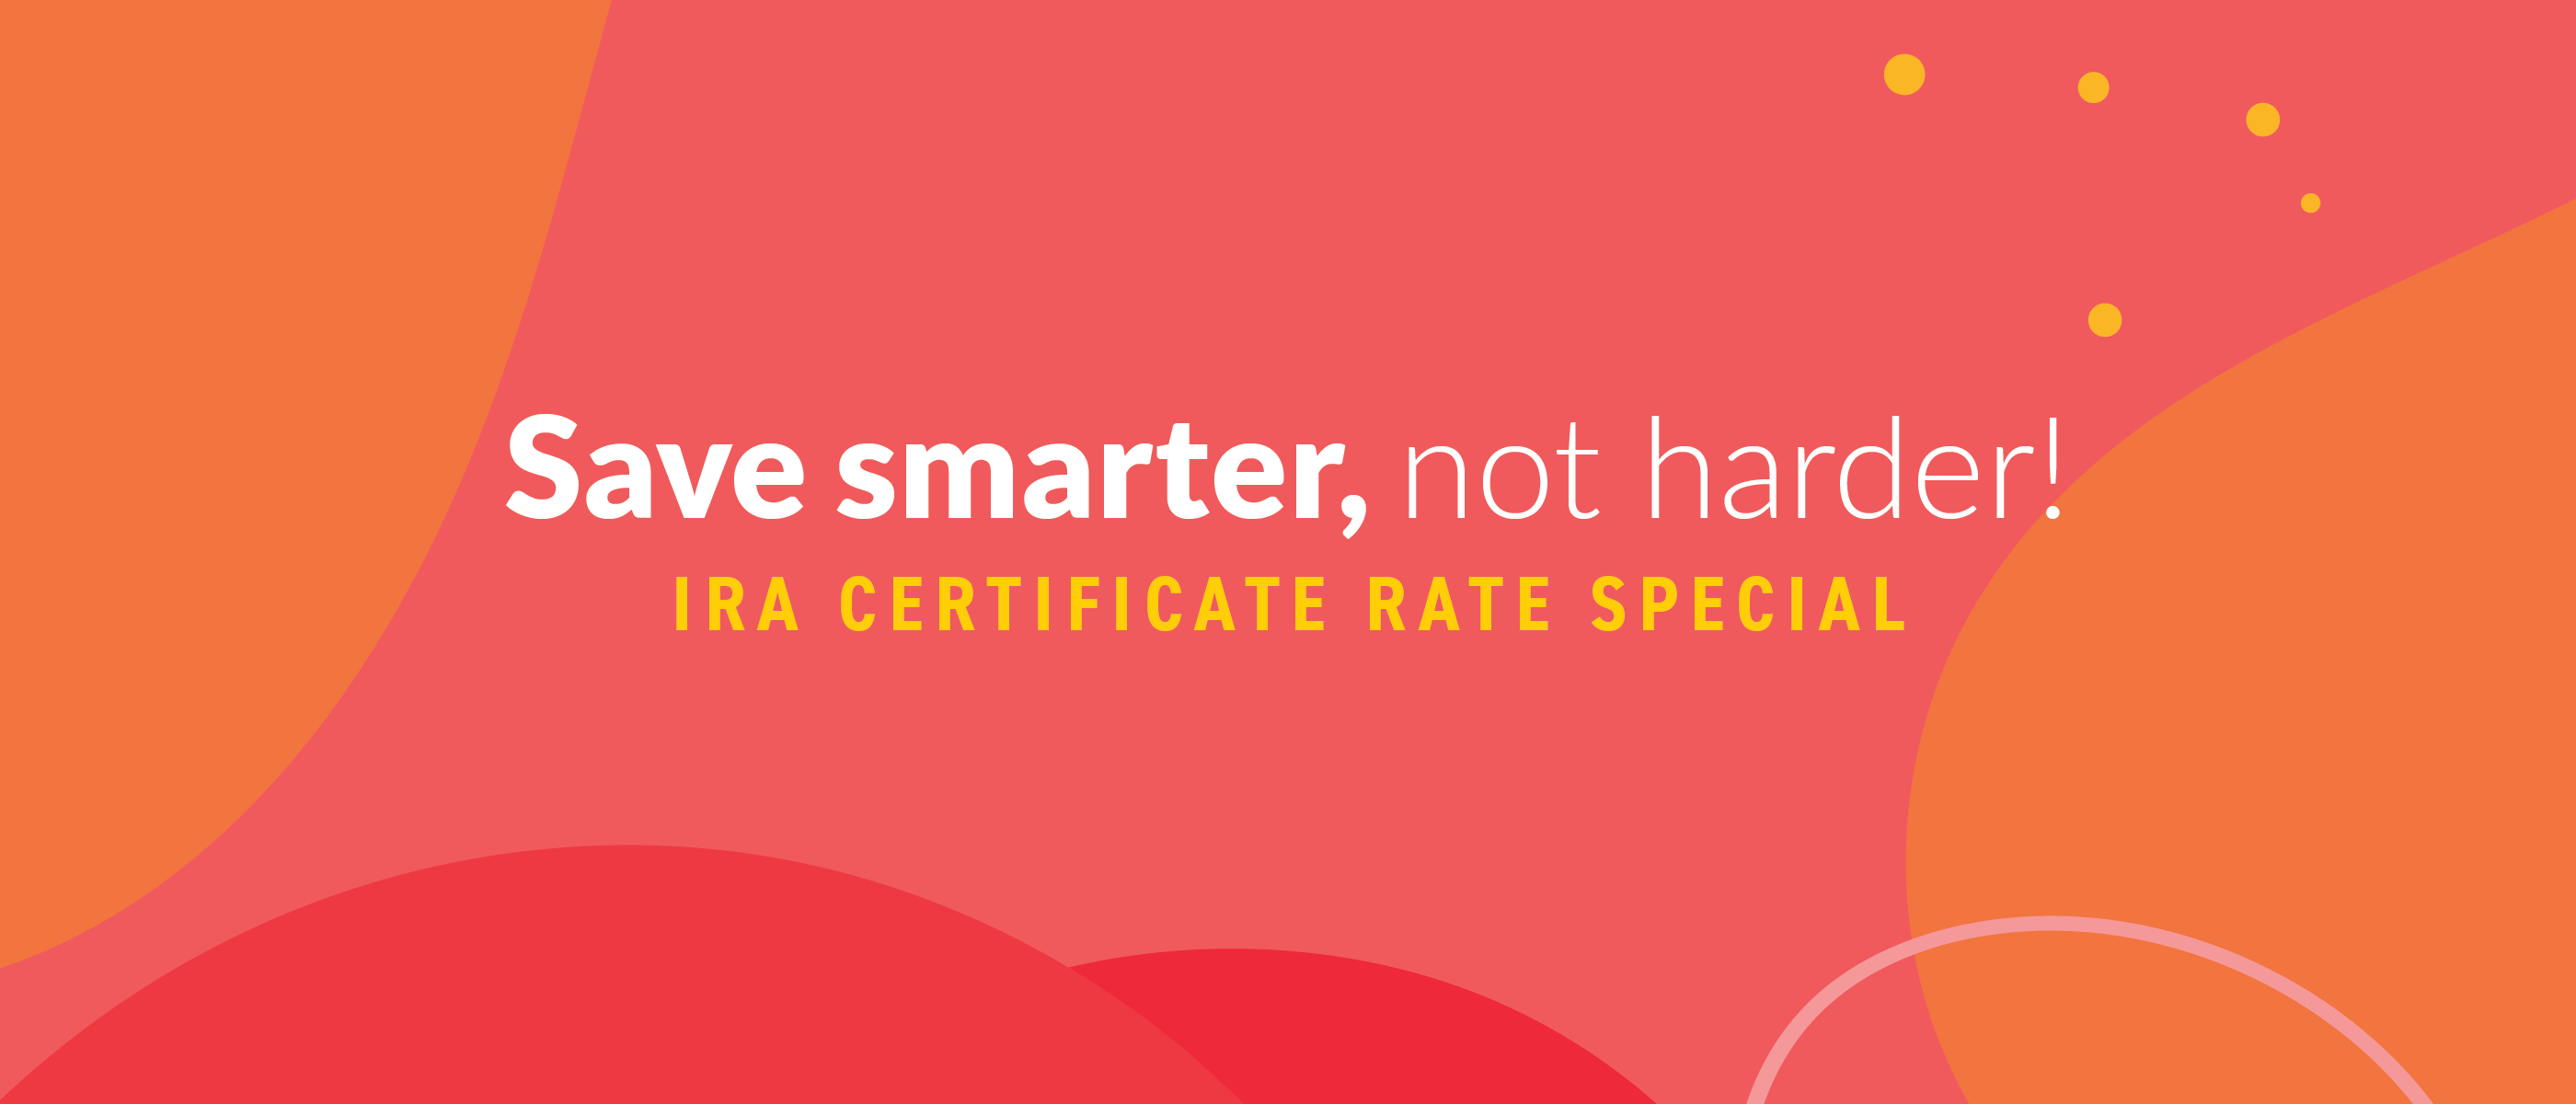 IRA Certificate Special